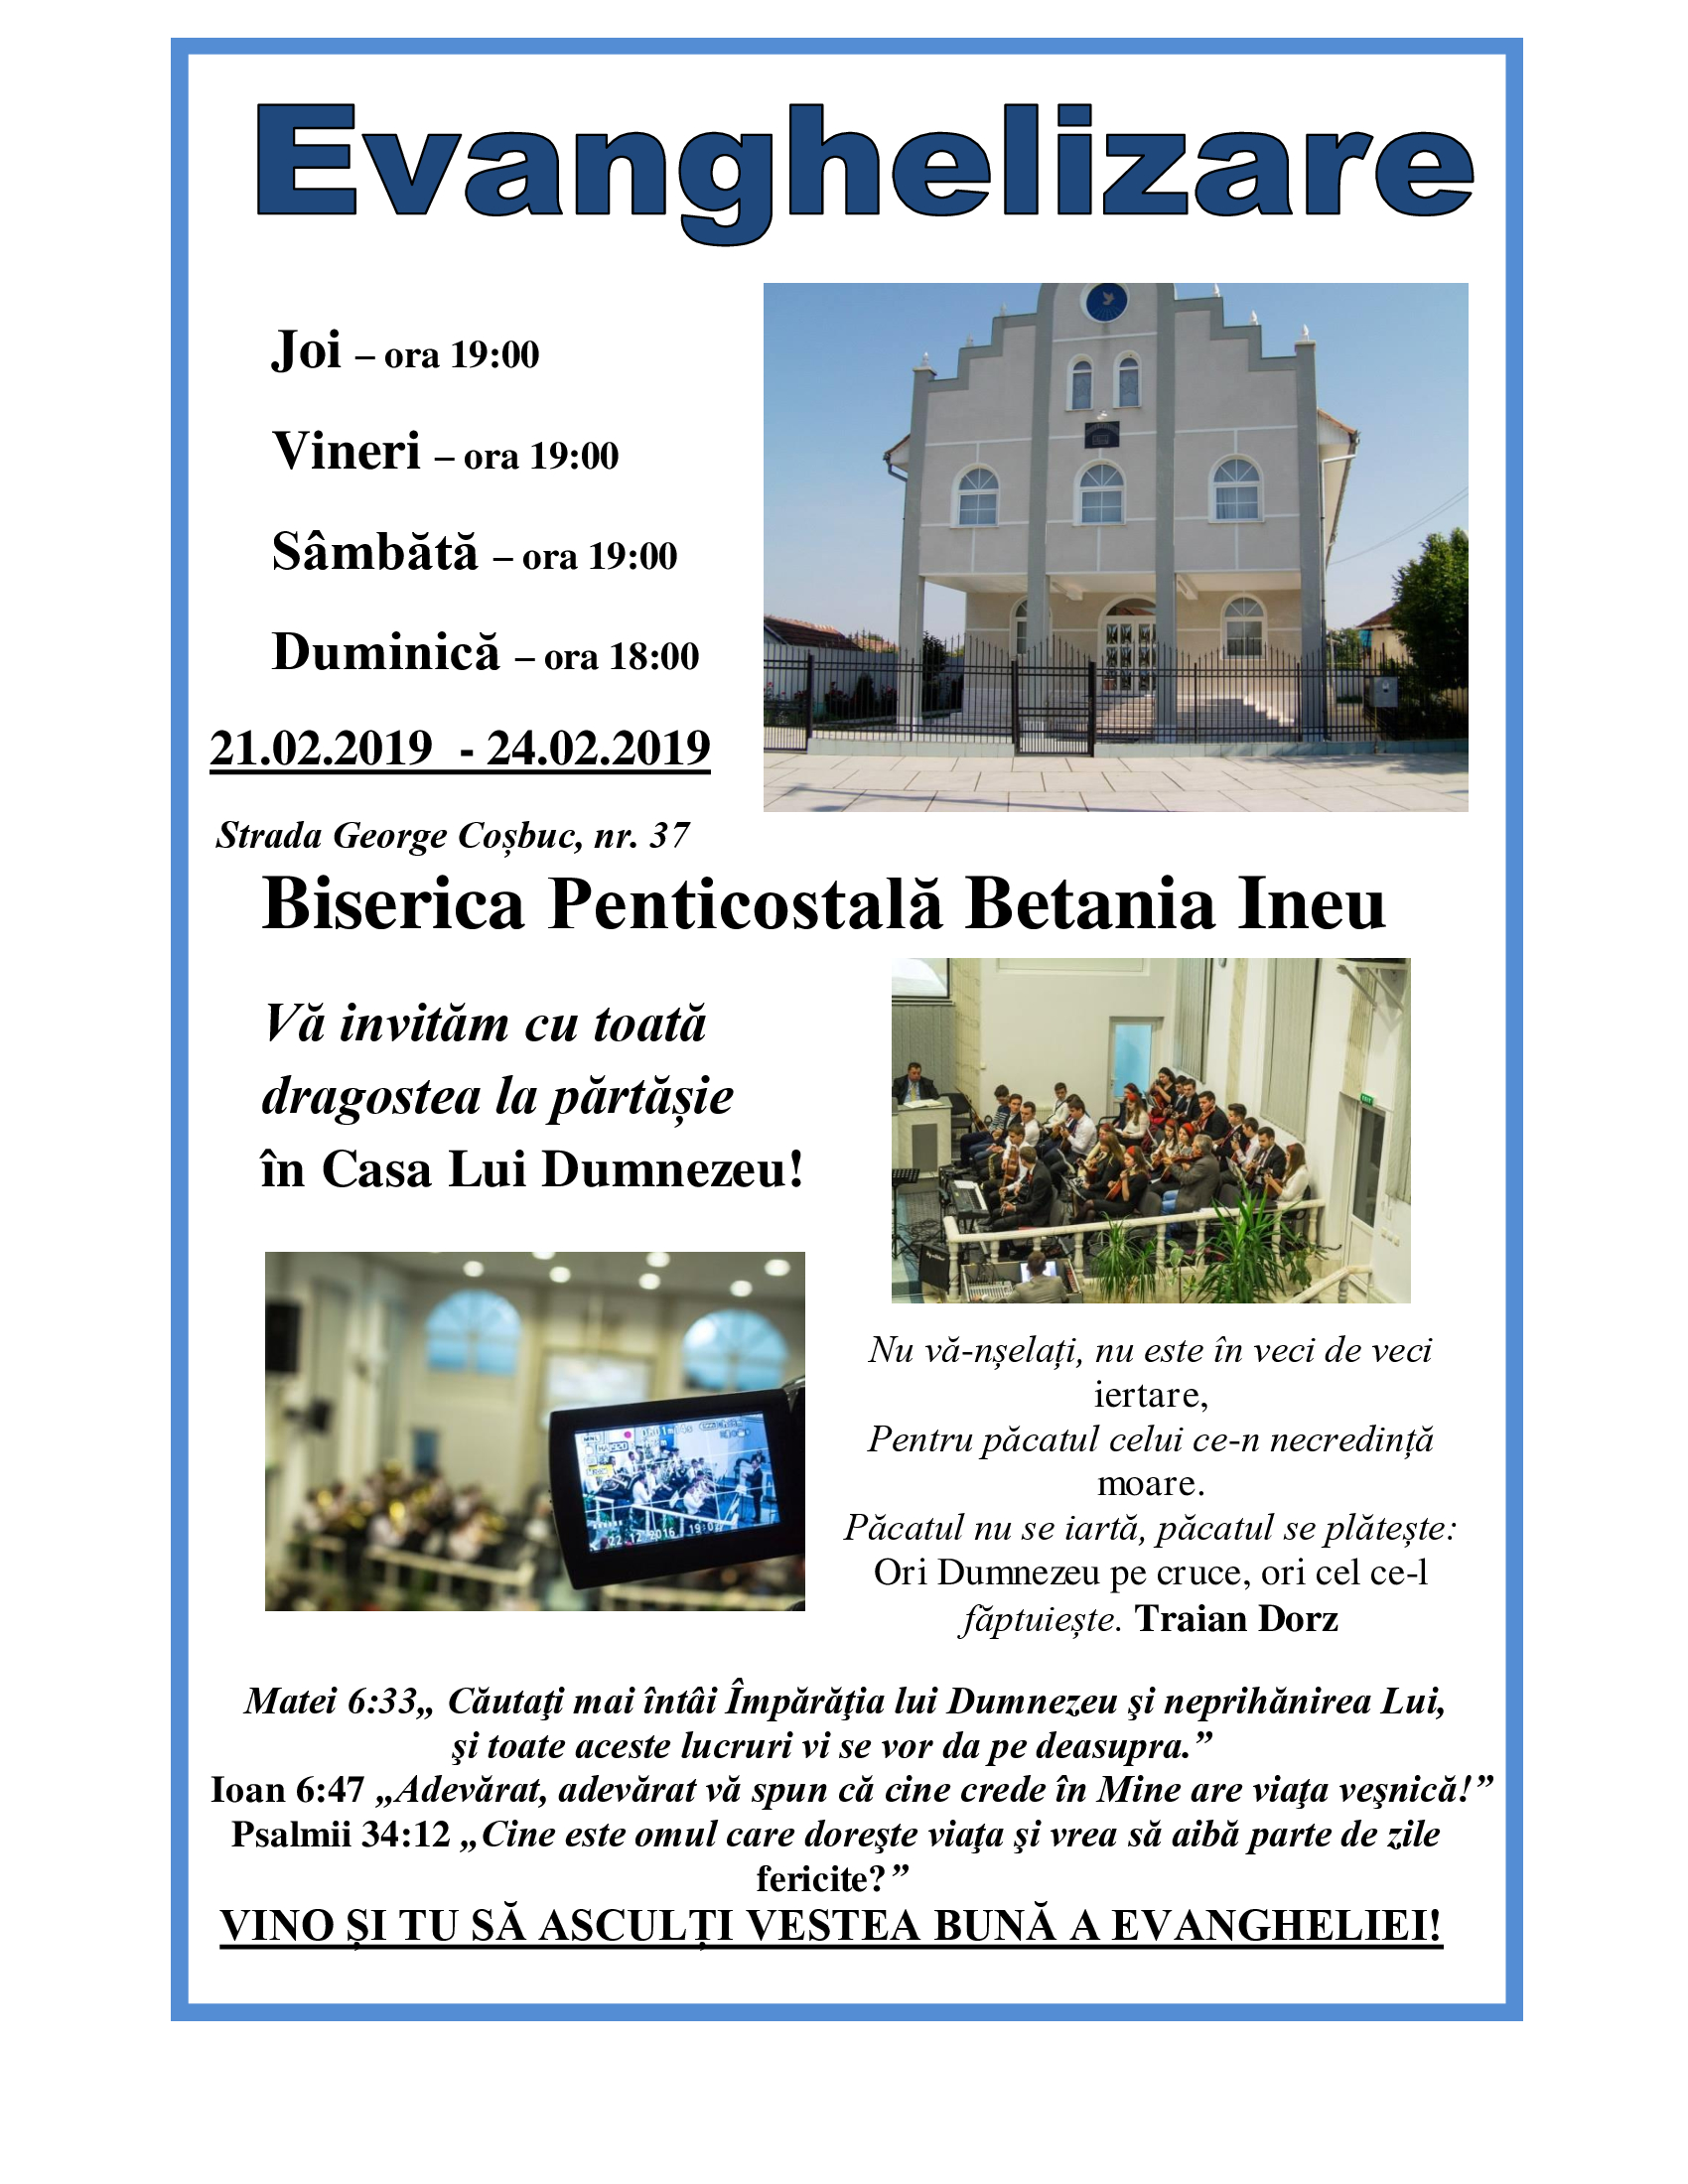 Evanghelizare la Biserica Penticostală din Ineu, județul Arad!